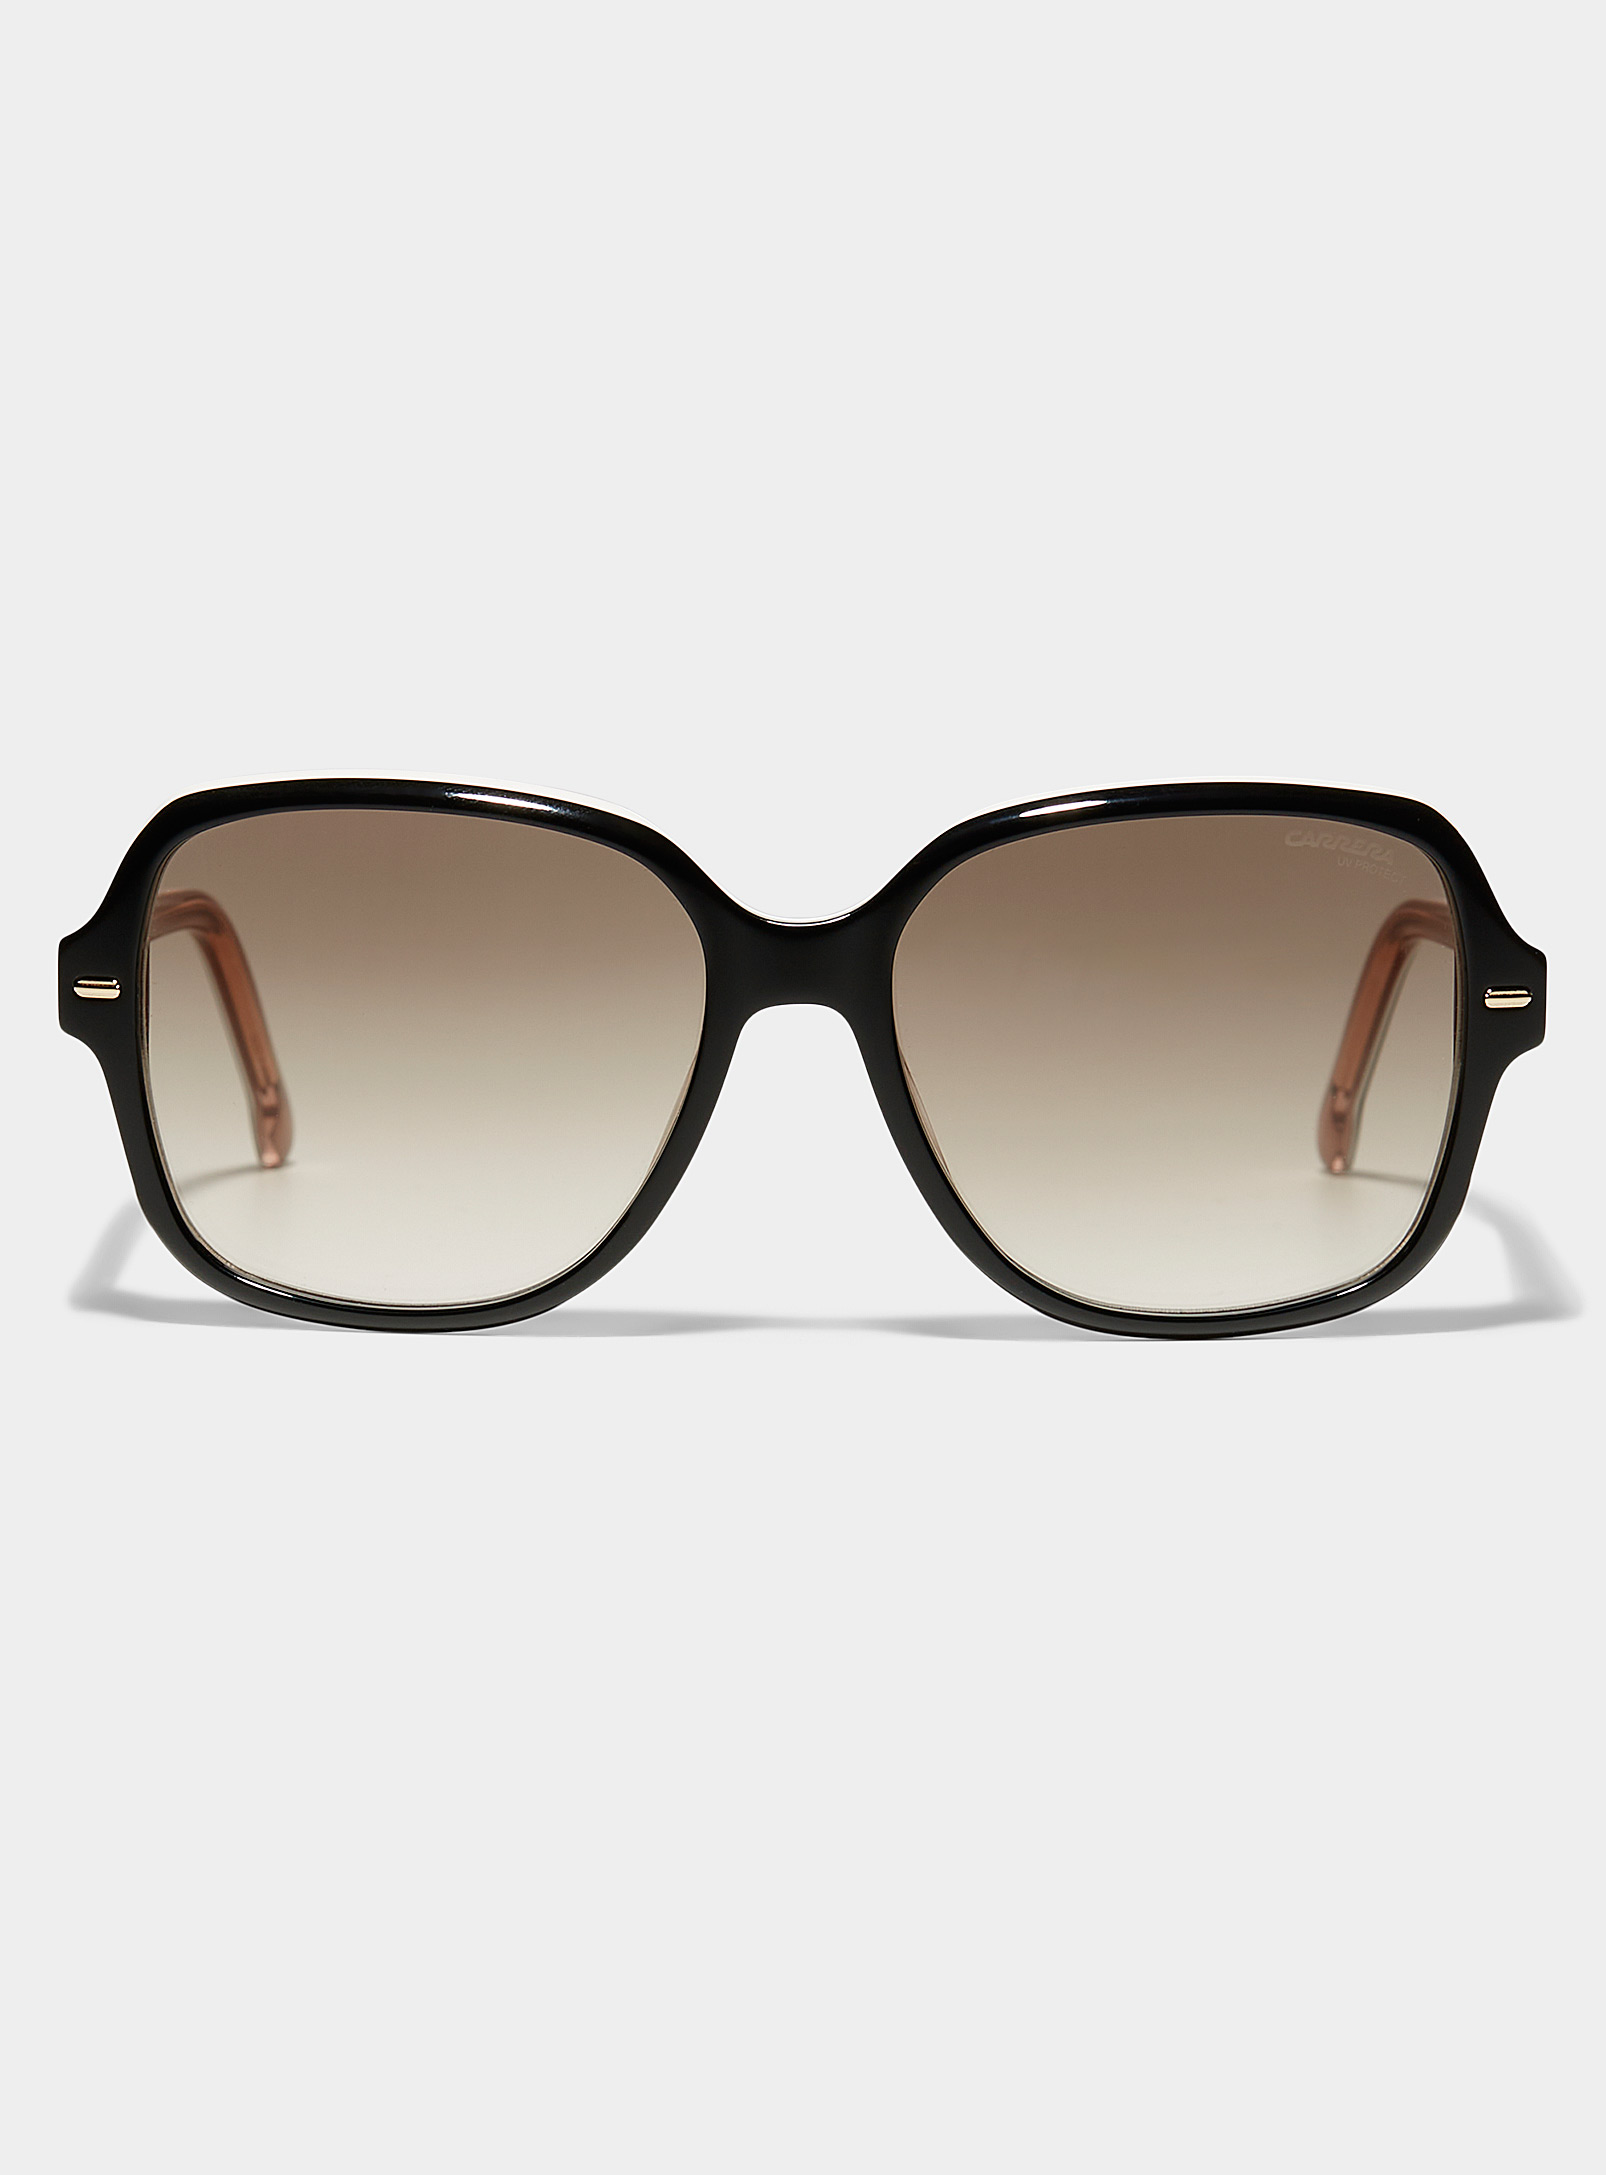 Carrera - Women's Tricolour square sunglasses